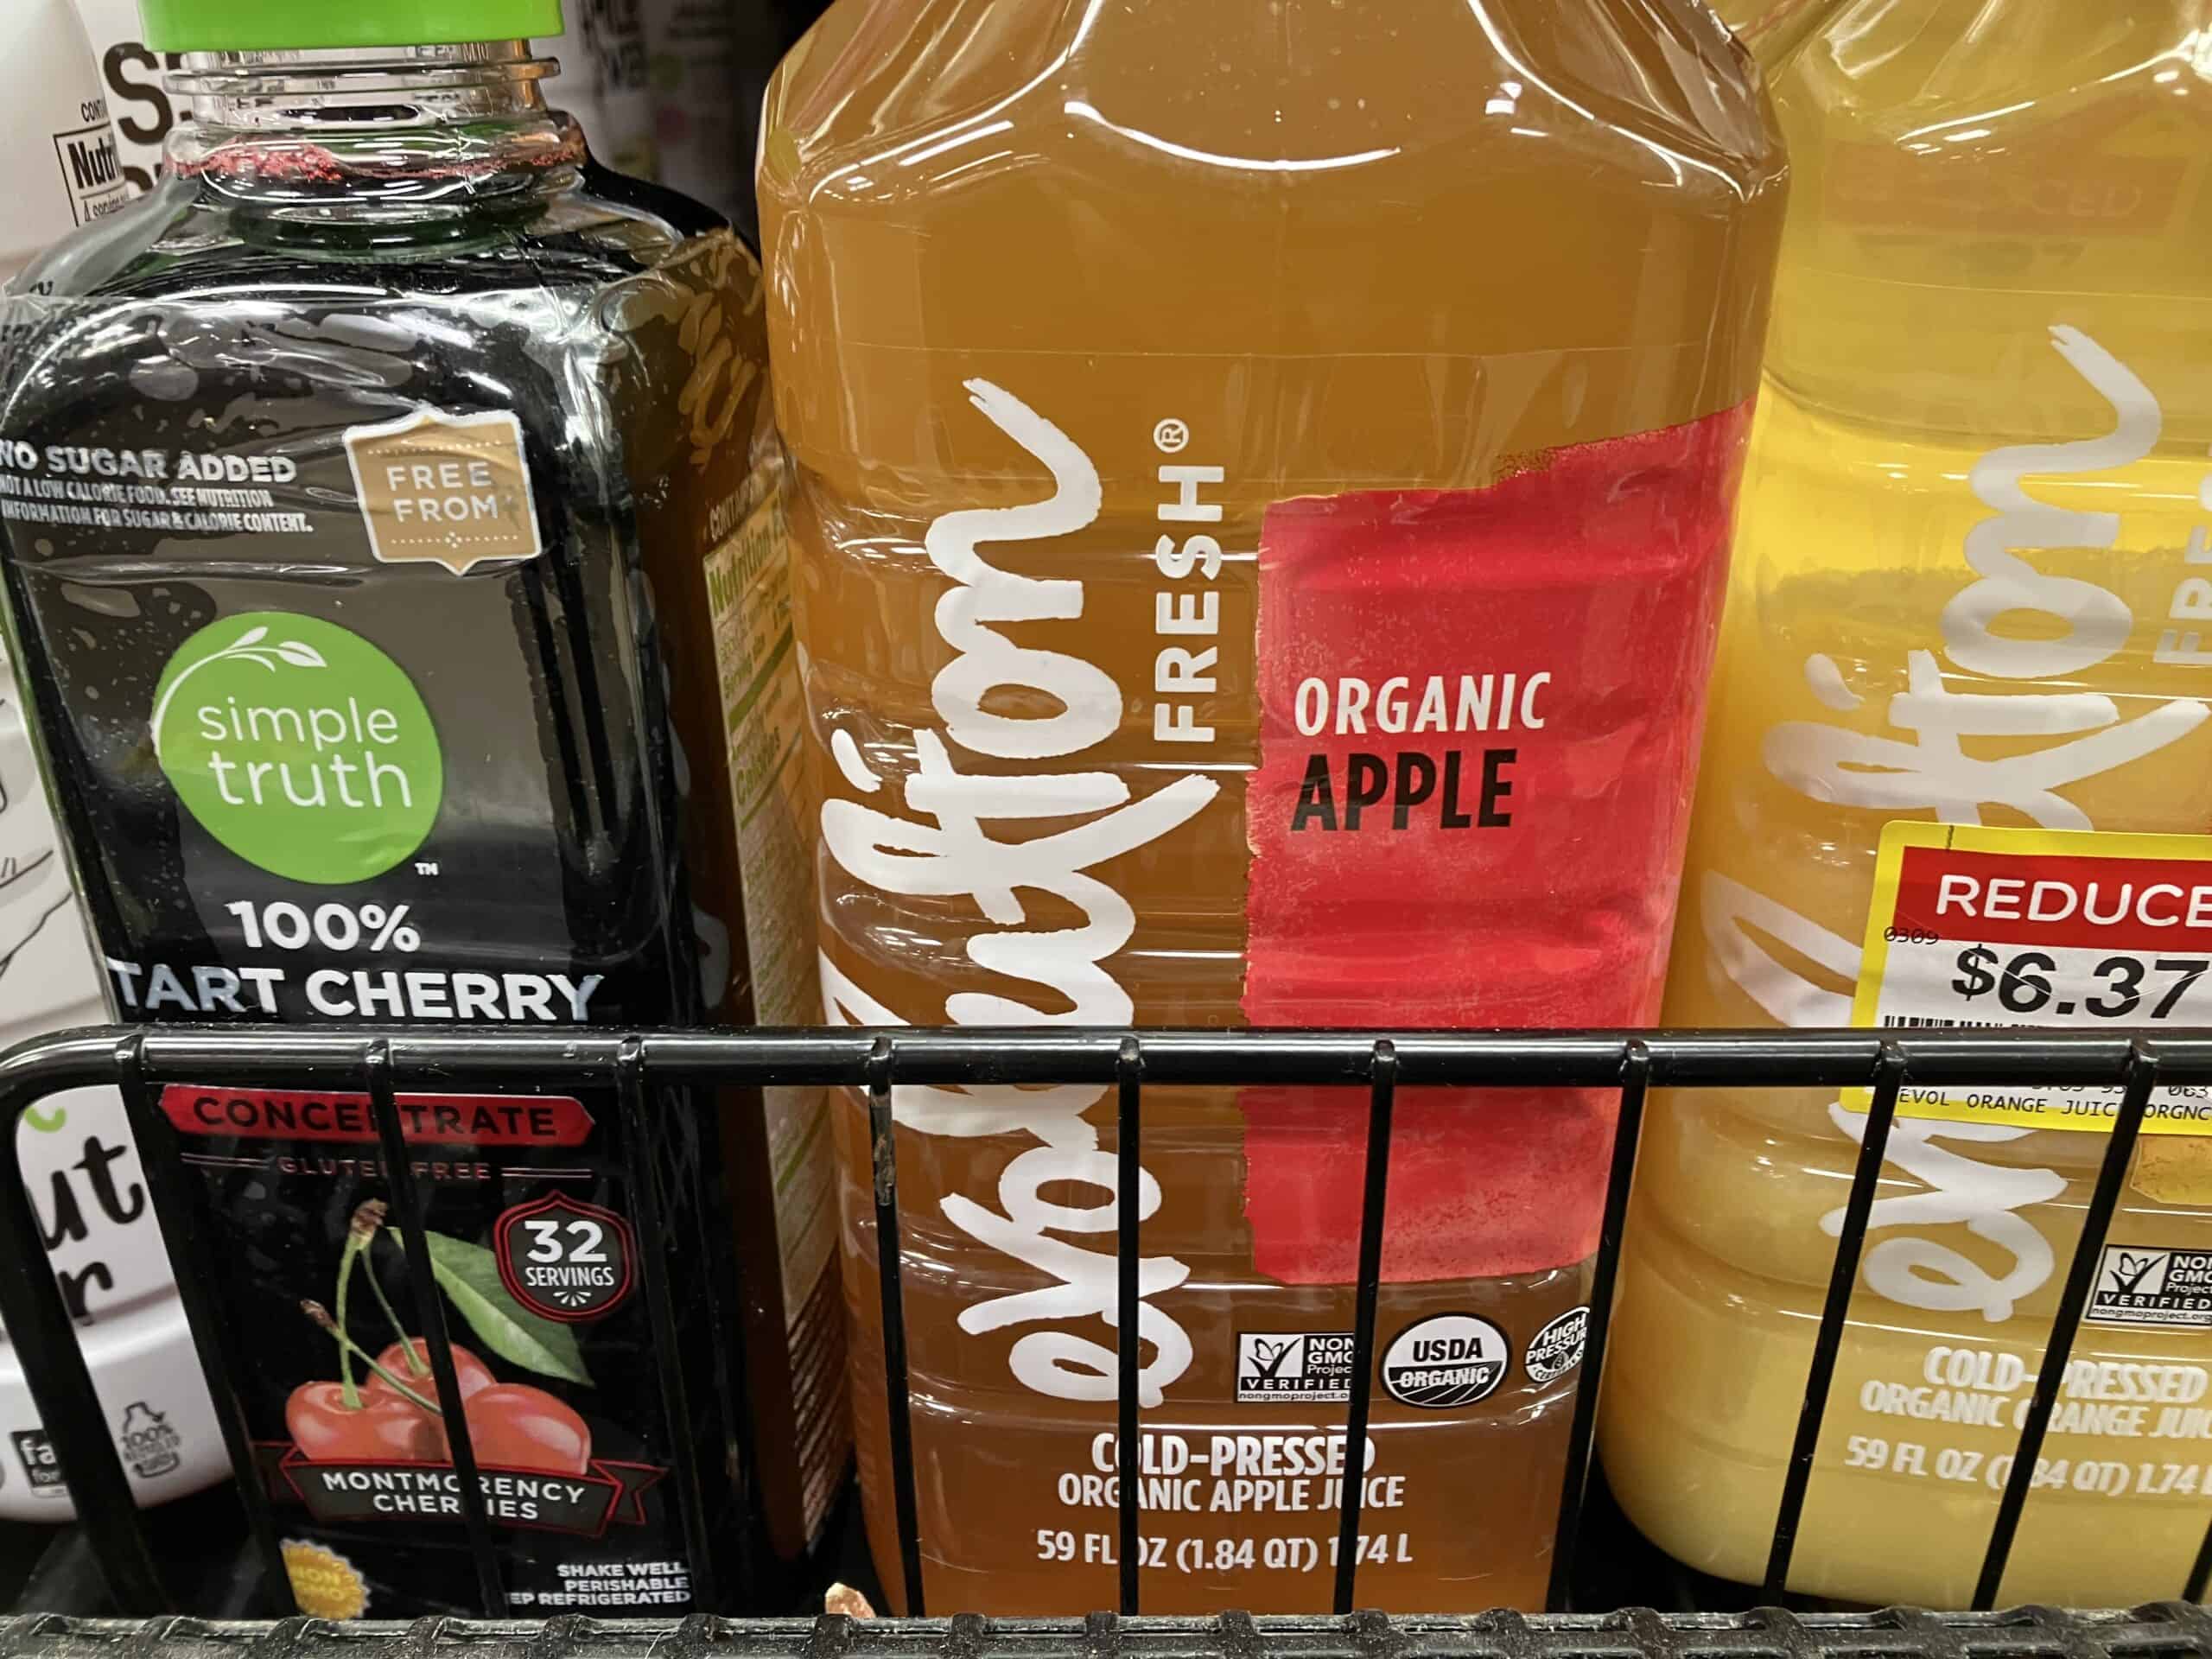 Evolution organic apple juice